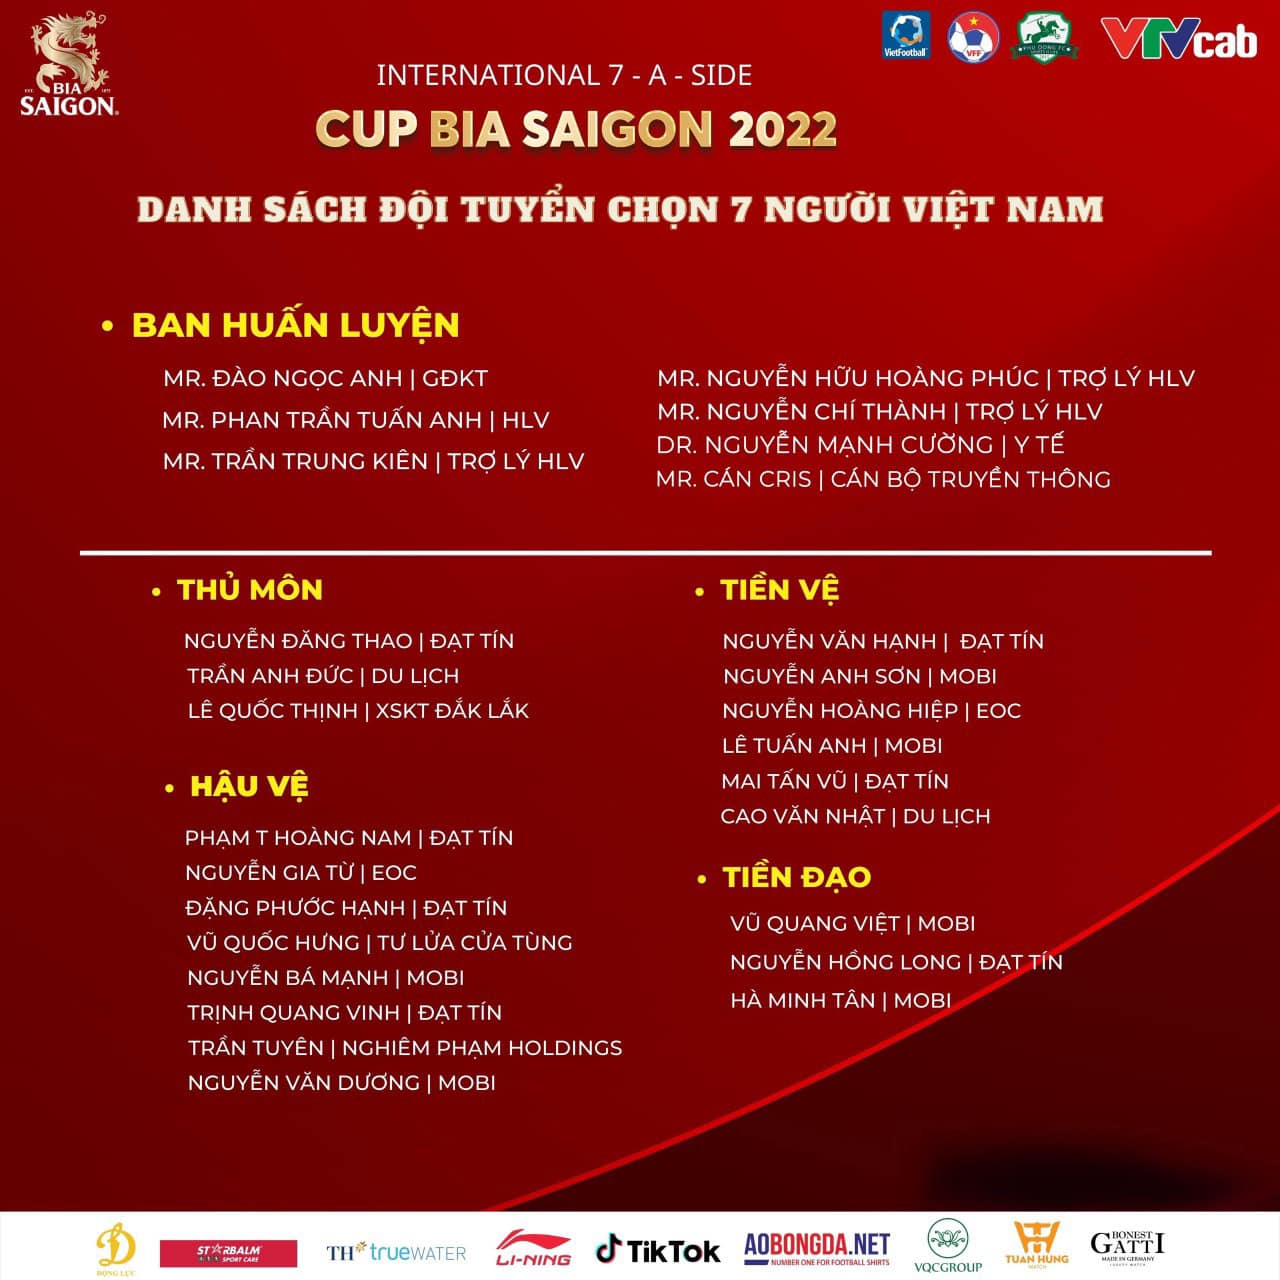 Việt Nam lần đầu tổ chức giải bóng đá 7 người quốc tế - Ảnh 2.